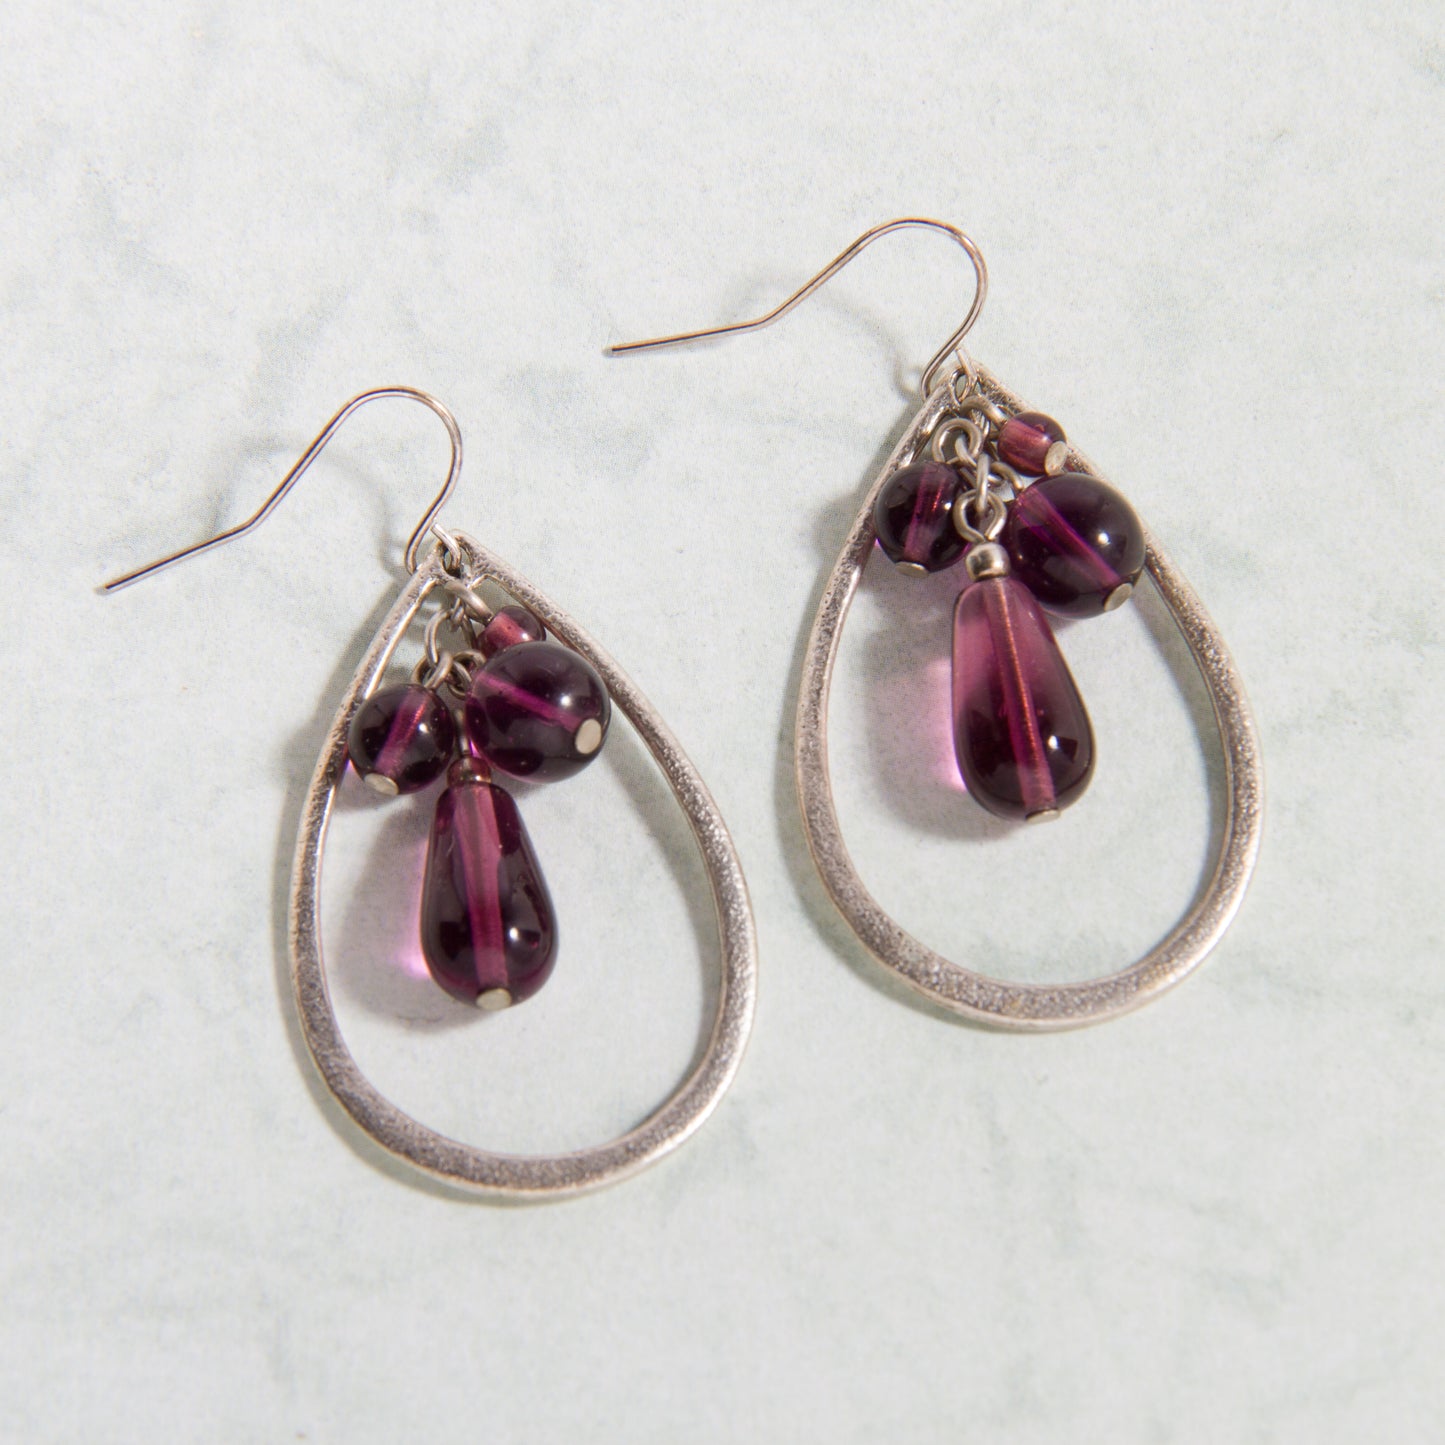 E2171-SL Open Teardrop Earrings with Purple Beads in Antiqued Silver